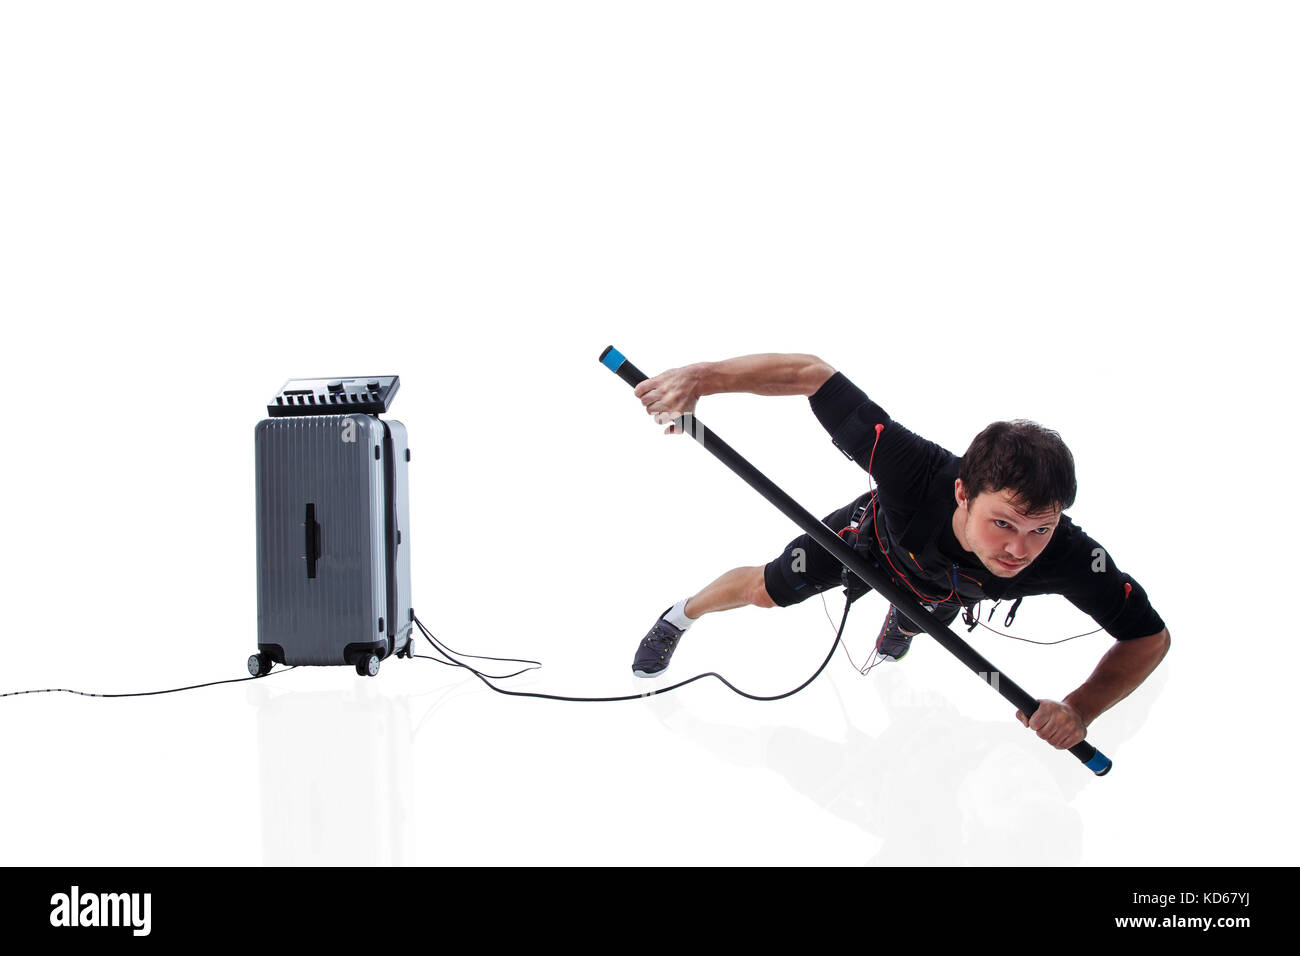 Athletic fitness homme en costume de stimulation musculaire électrique faisant une part plank avec body bar, studio isolé sur fond blanc Banque D'Images